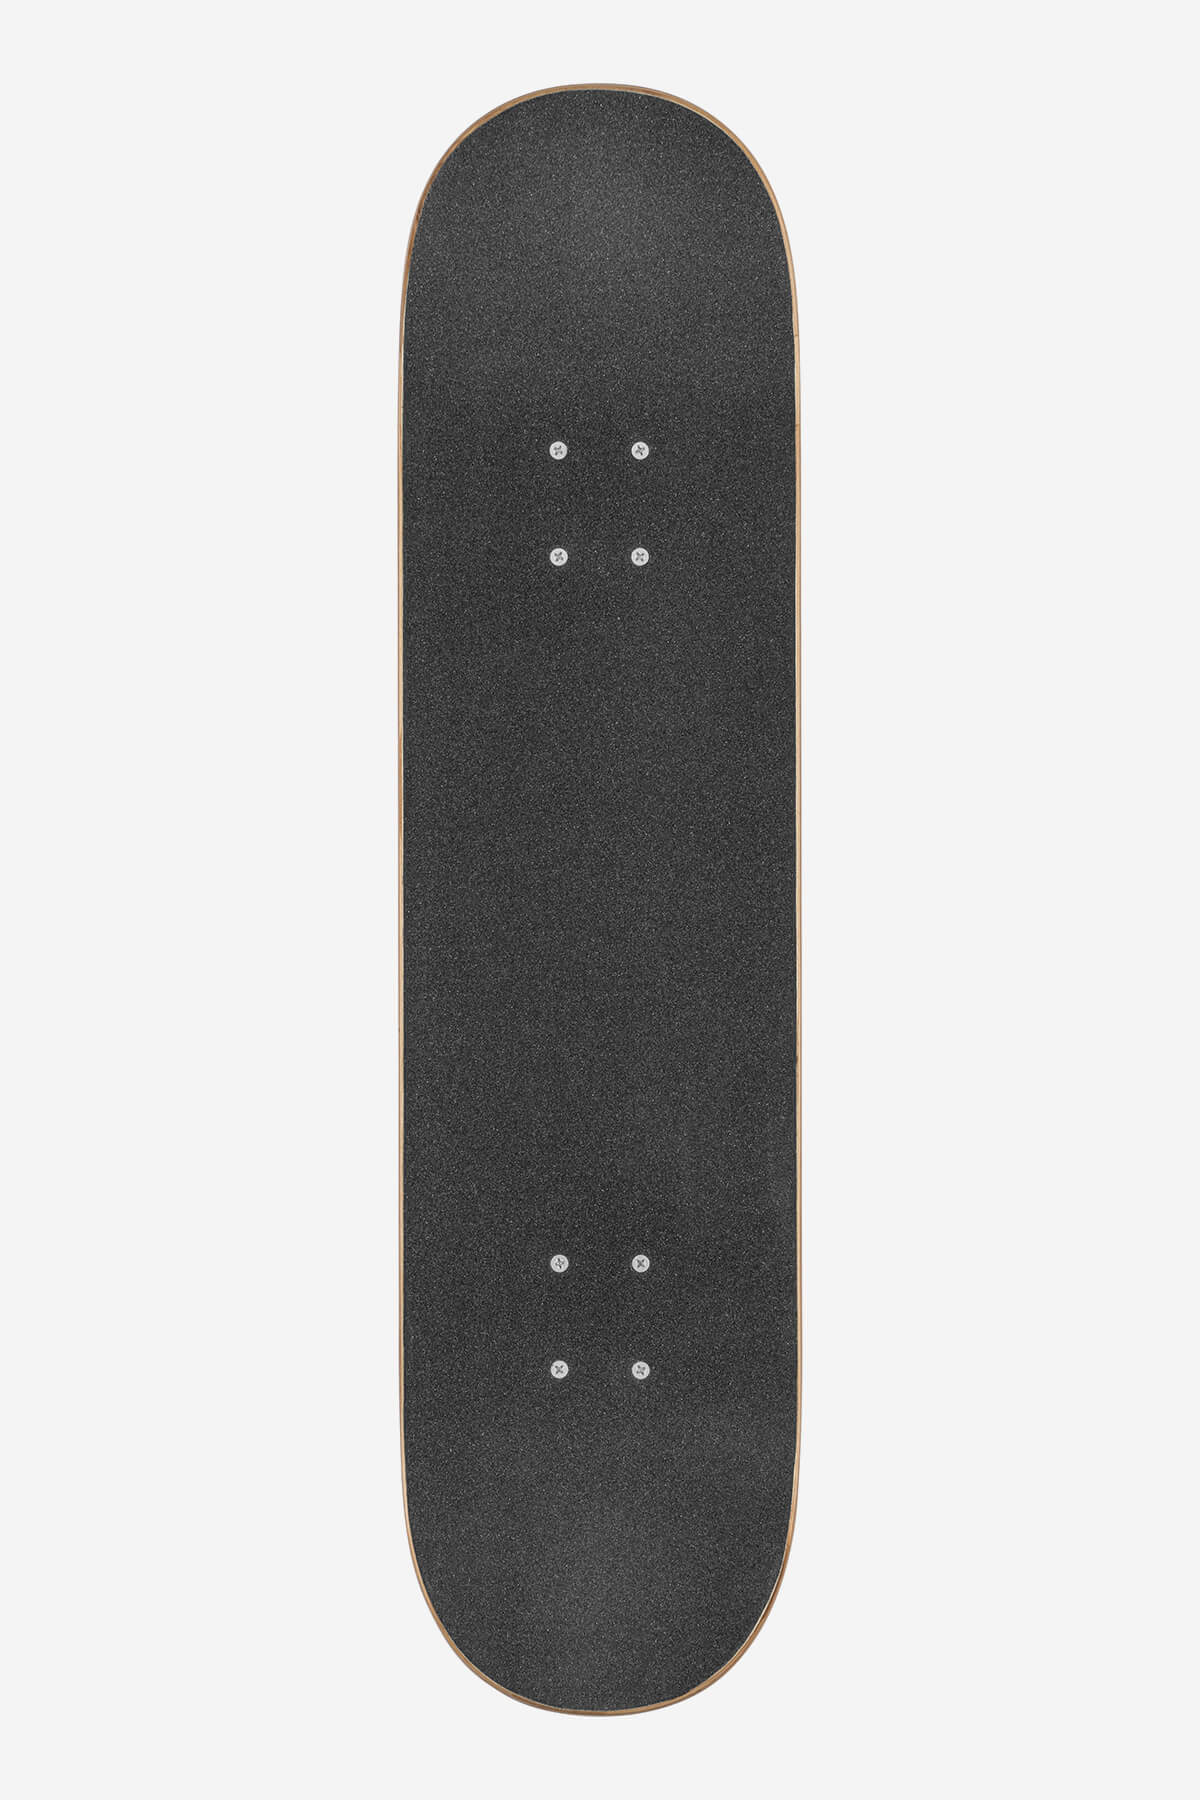 g0 fubar white black 8.0" complete skateboard